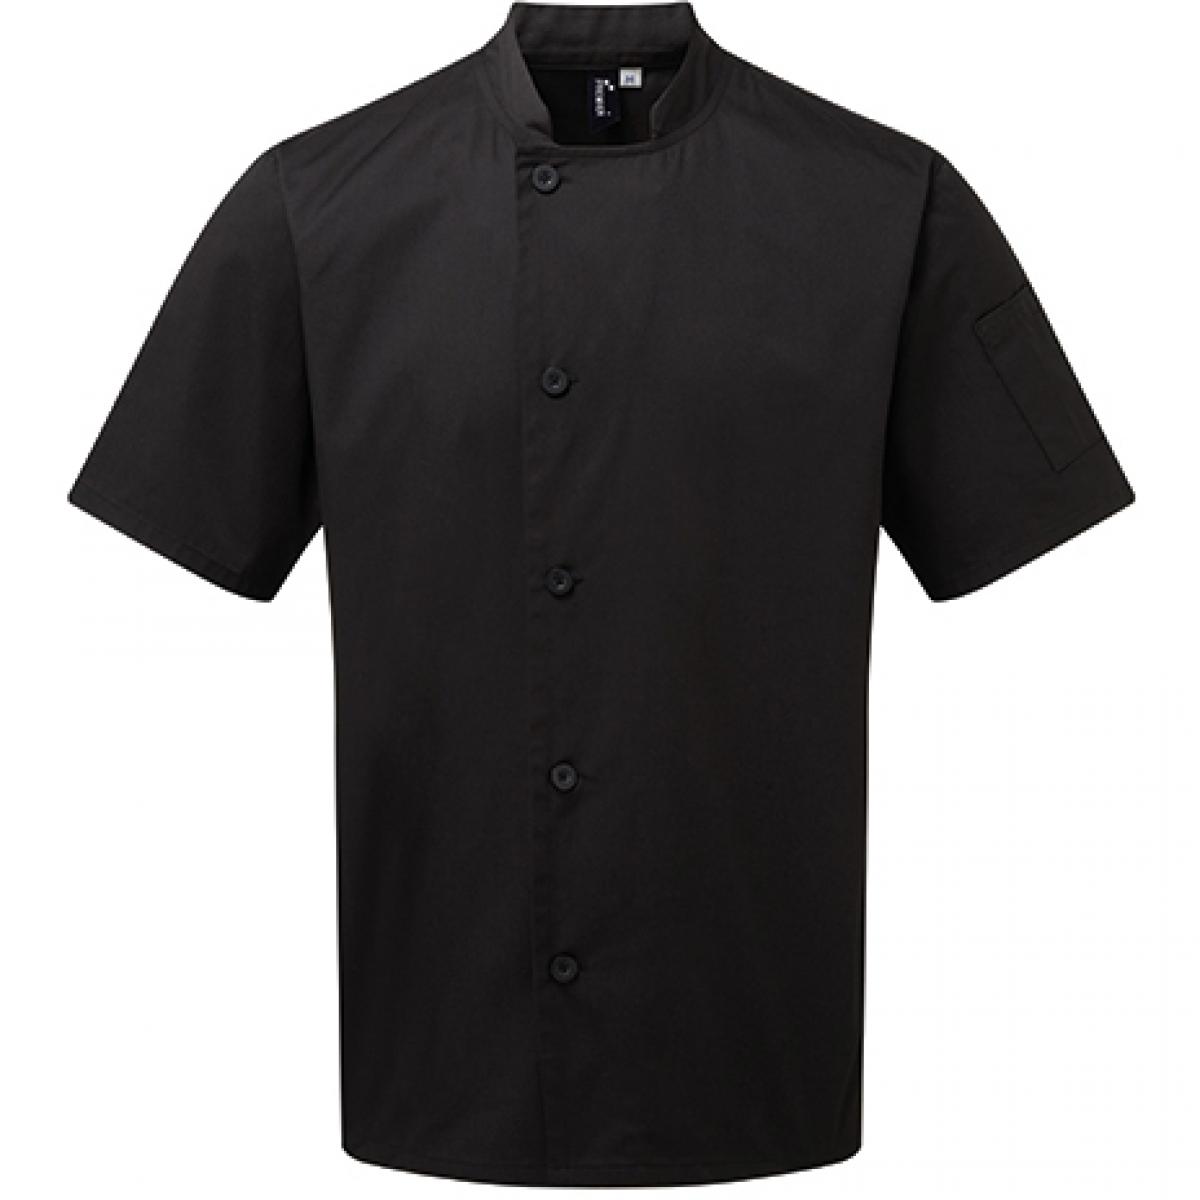 Hersteller: Premier Workwear Herstellernummer: PR900 Artikelbezeichnung: Kochjacke Essential Short Sleeve Chefs Jacket Farbe: Black